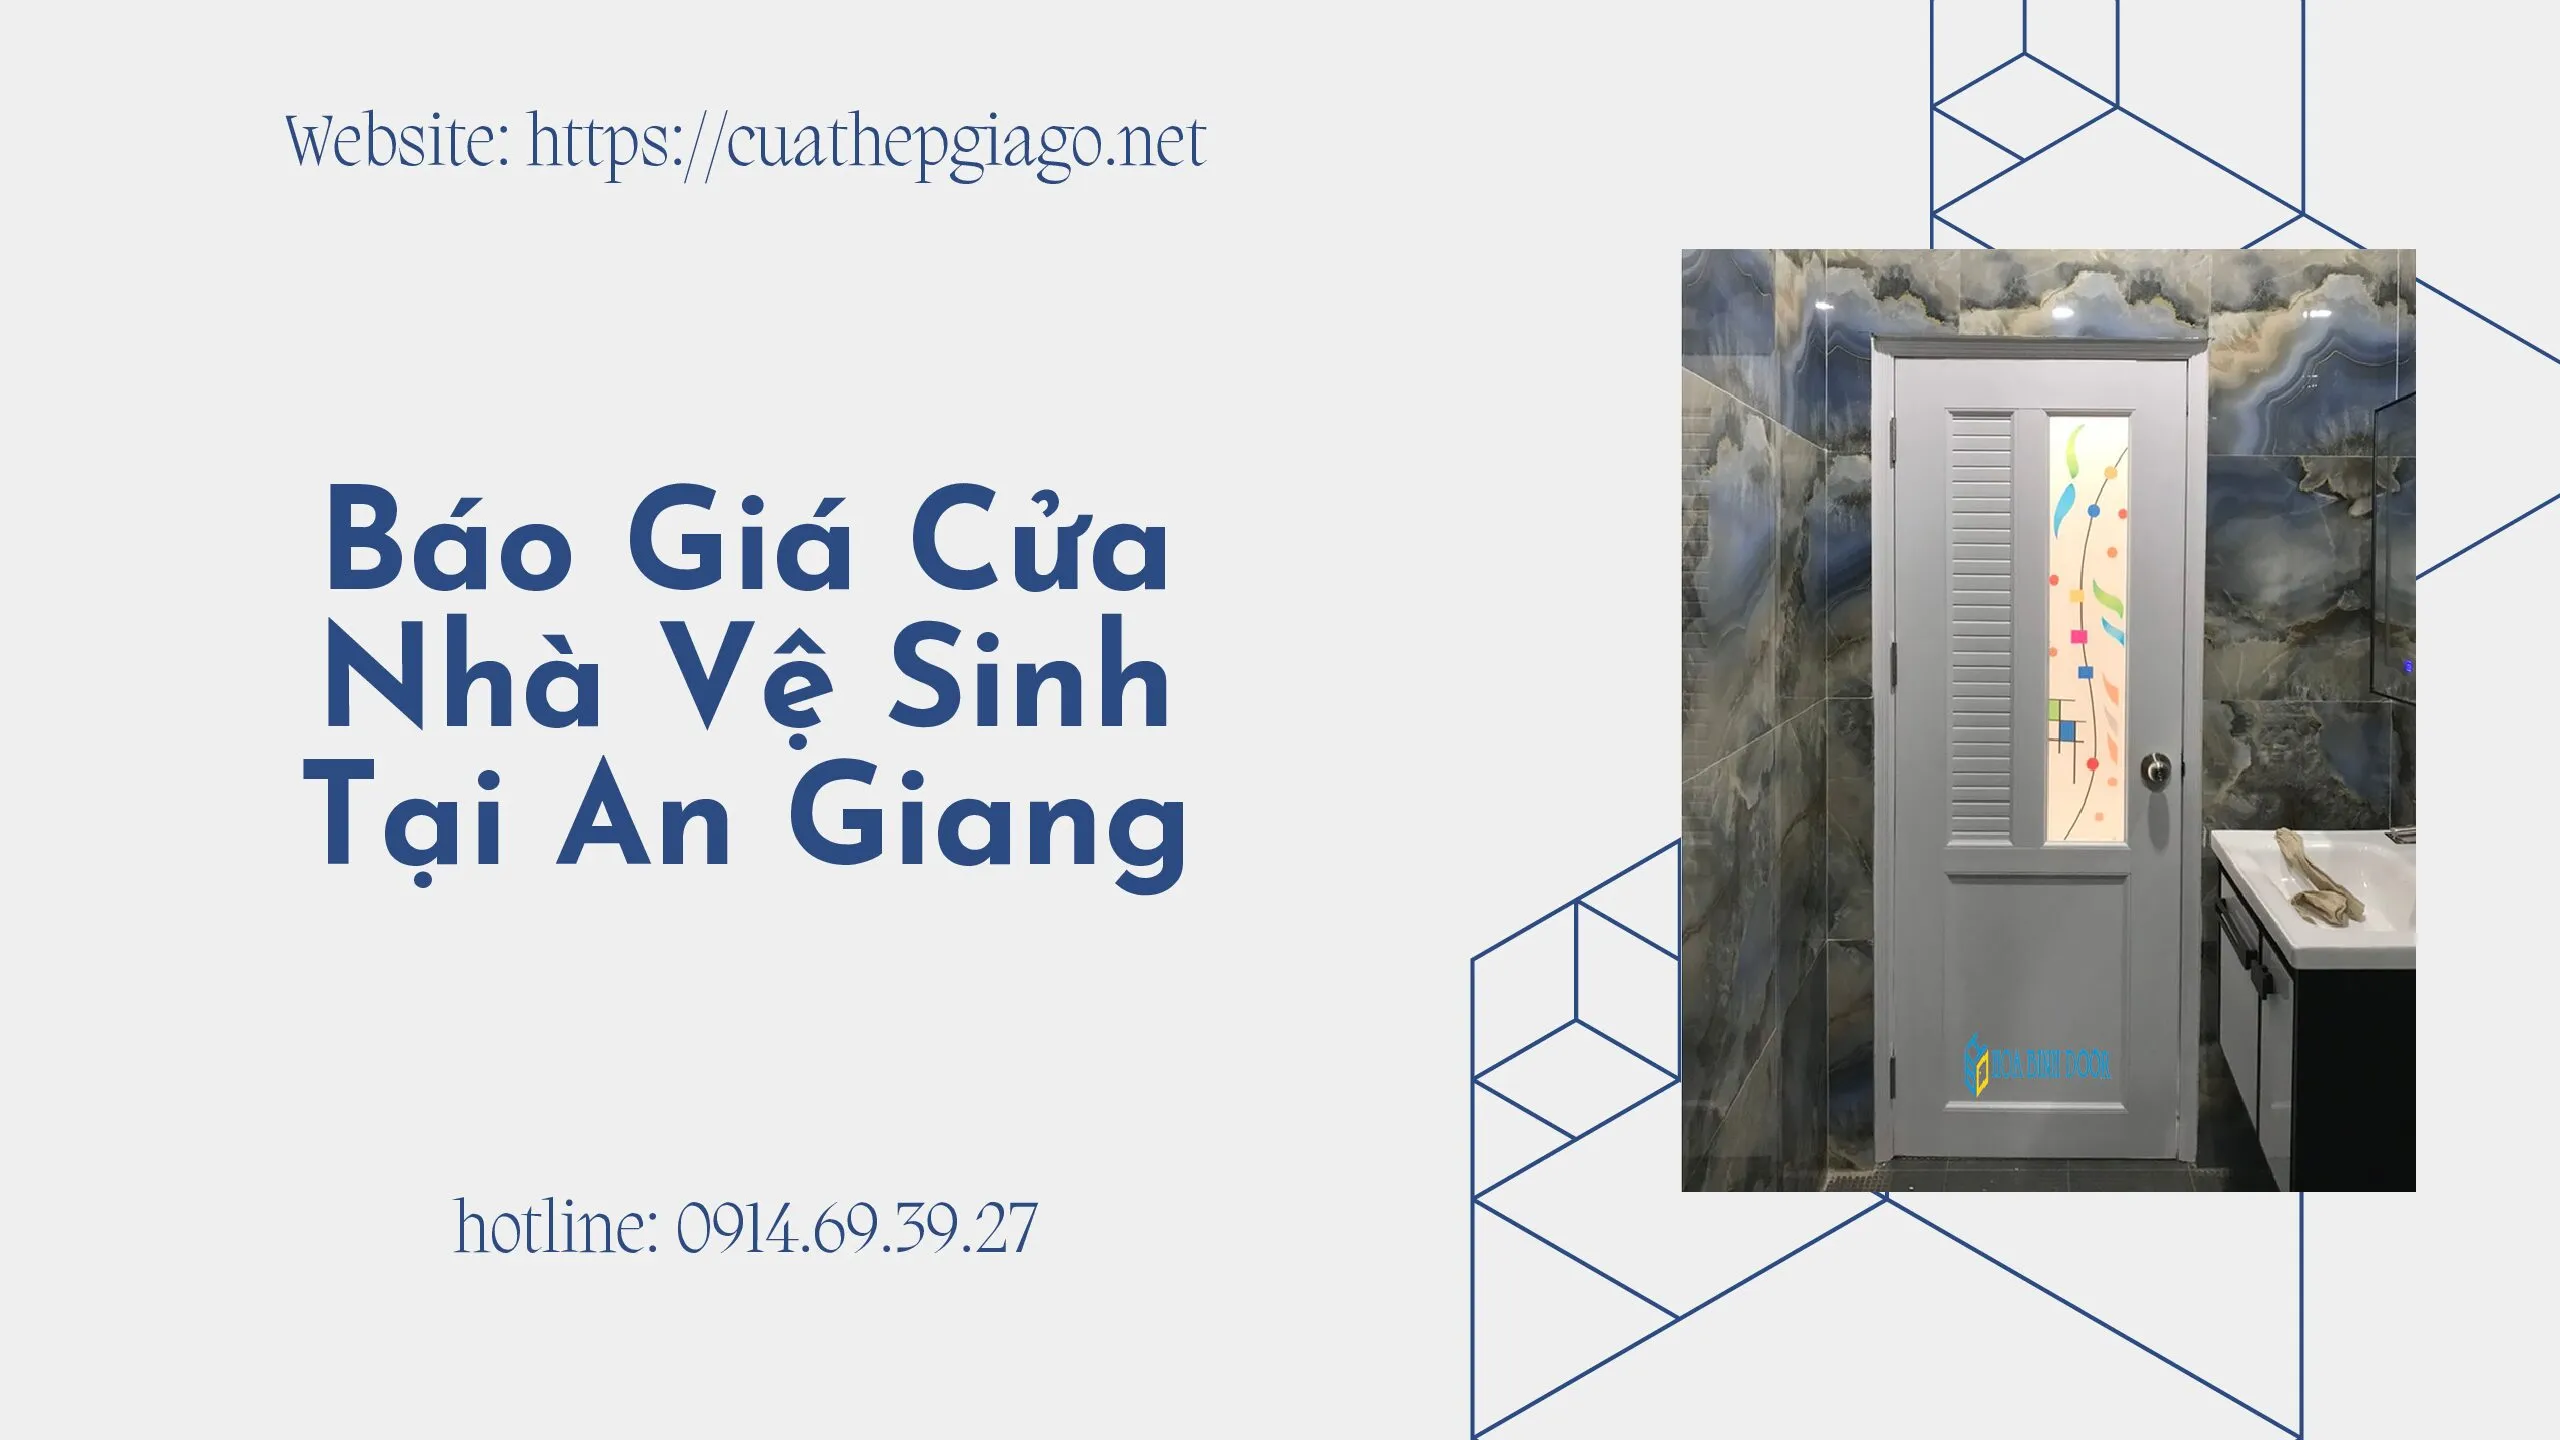 Bao-gia-cua-nha-ve-sinh-tai-An-Giang-pdf.jpg.webp